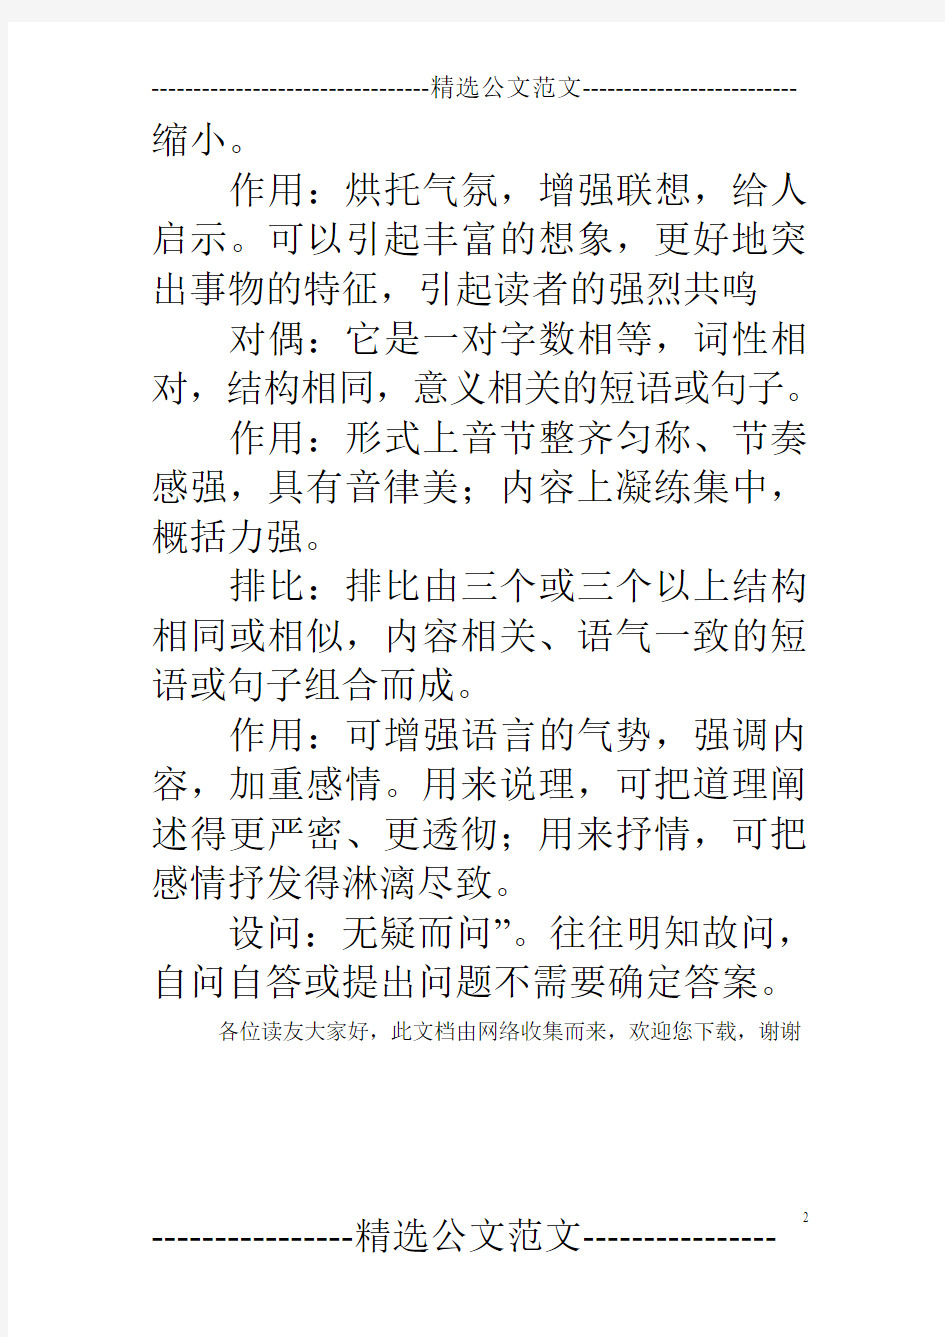 初中语文阅读题常用修辞手法详解